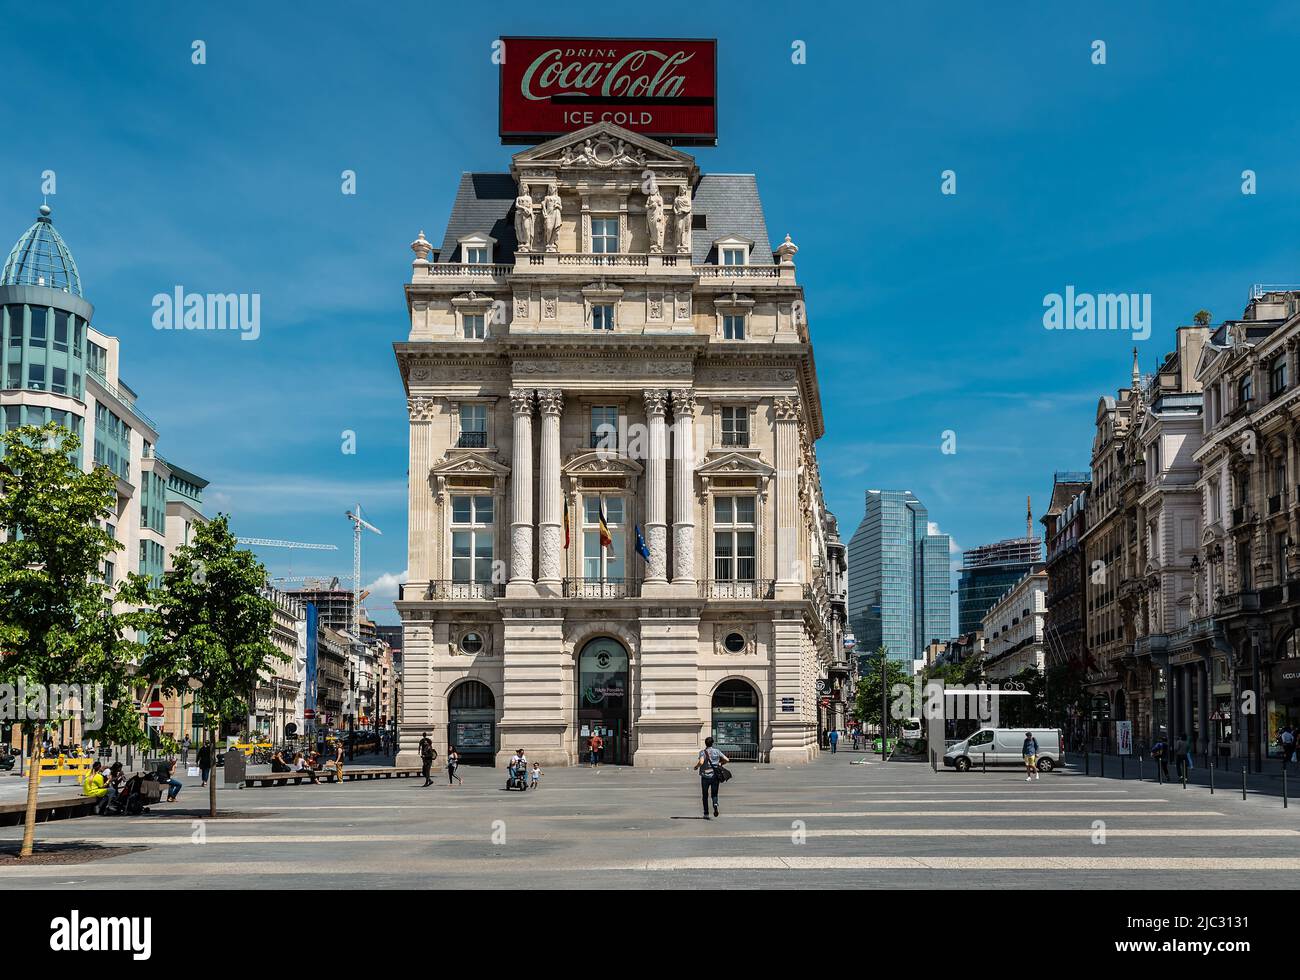 Bruxelles Centre ville, Bruxelles Vieille ville - Belgique - 05 29 2020 la place de Brouckere avec la façade de l'Hôtel Continental avec un Coca-Cola b Banque D'Images